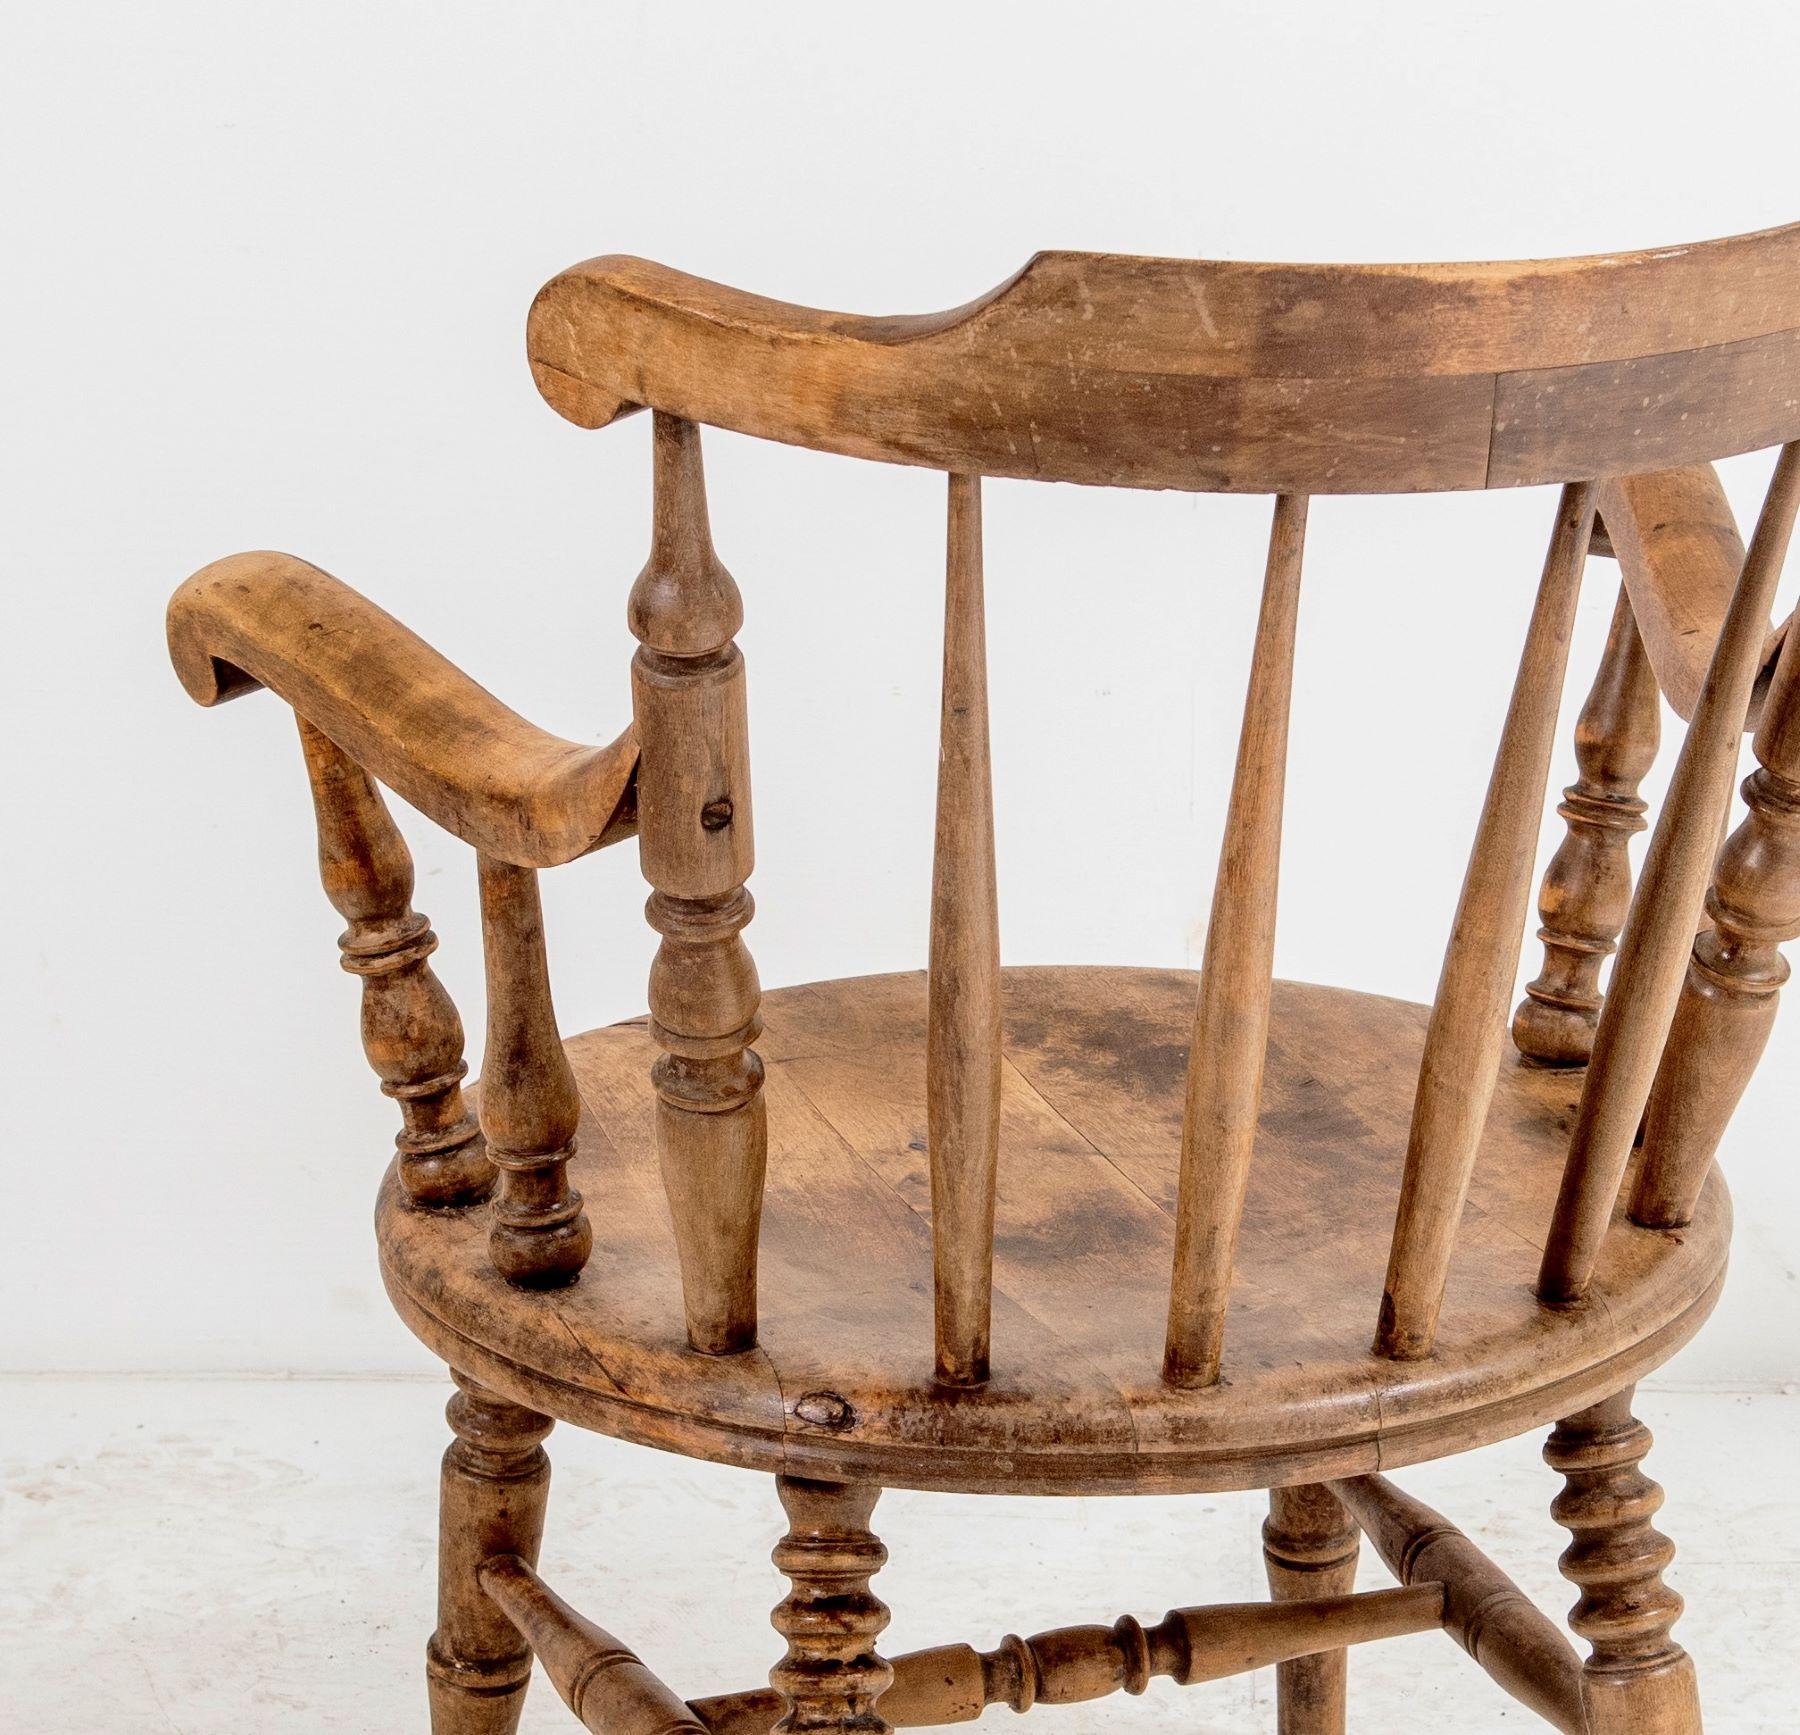 Ein schöner Windsor-Sessel mit niedriger Rückenlehne in toller Form und Farbe. Massivholzkonstruktion mit runder Sitzfläche aus Ulmenholz. Der Stuhl hat eine niedrige, geschwungene Rückenlehne, die auf gedrechselten Spindeln zu weit gespreizten